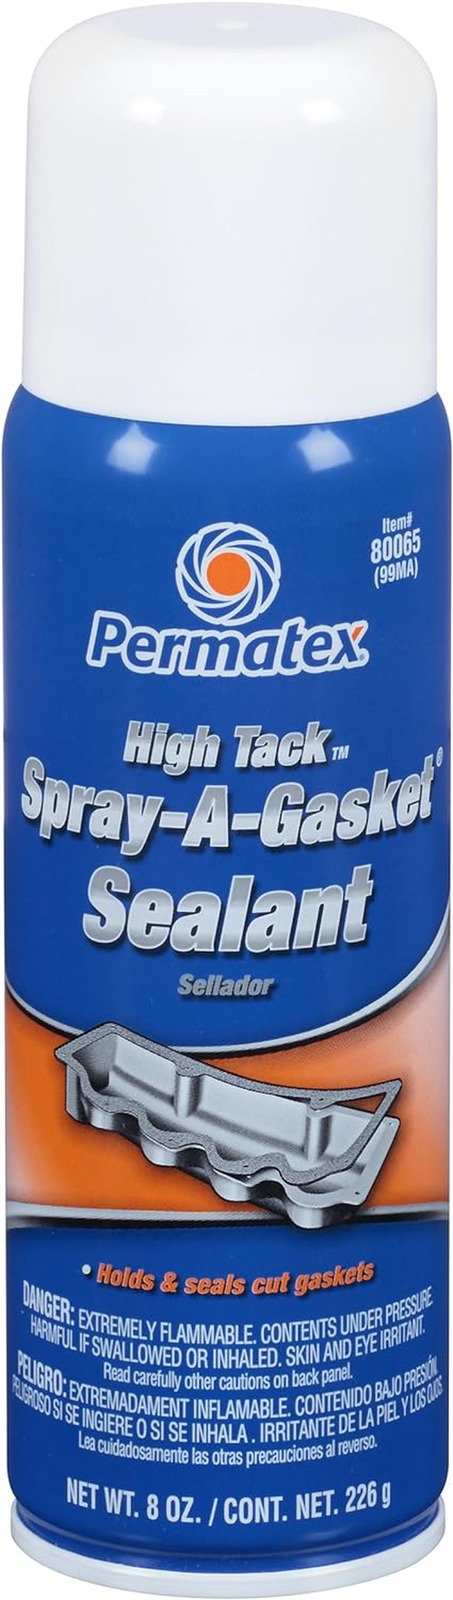 80065 High Tack Spray-A-Gasket Sealant, 8 Oz. Net Aerosol Can